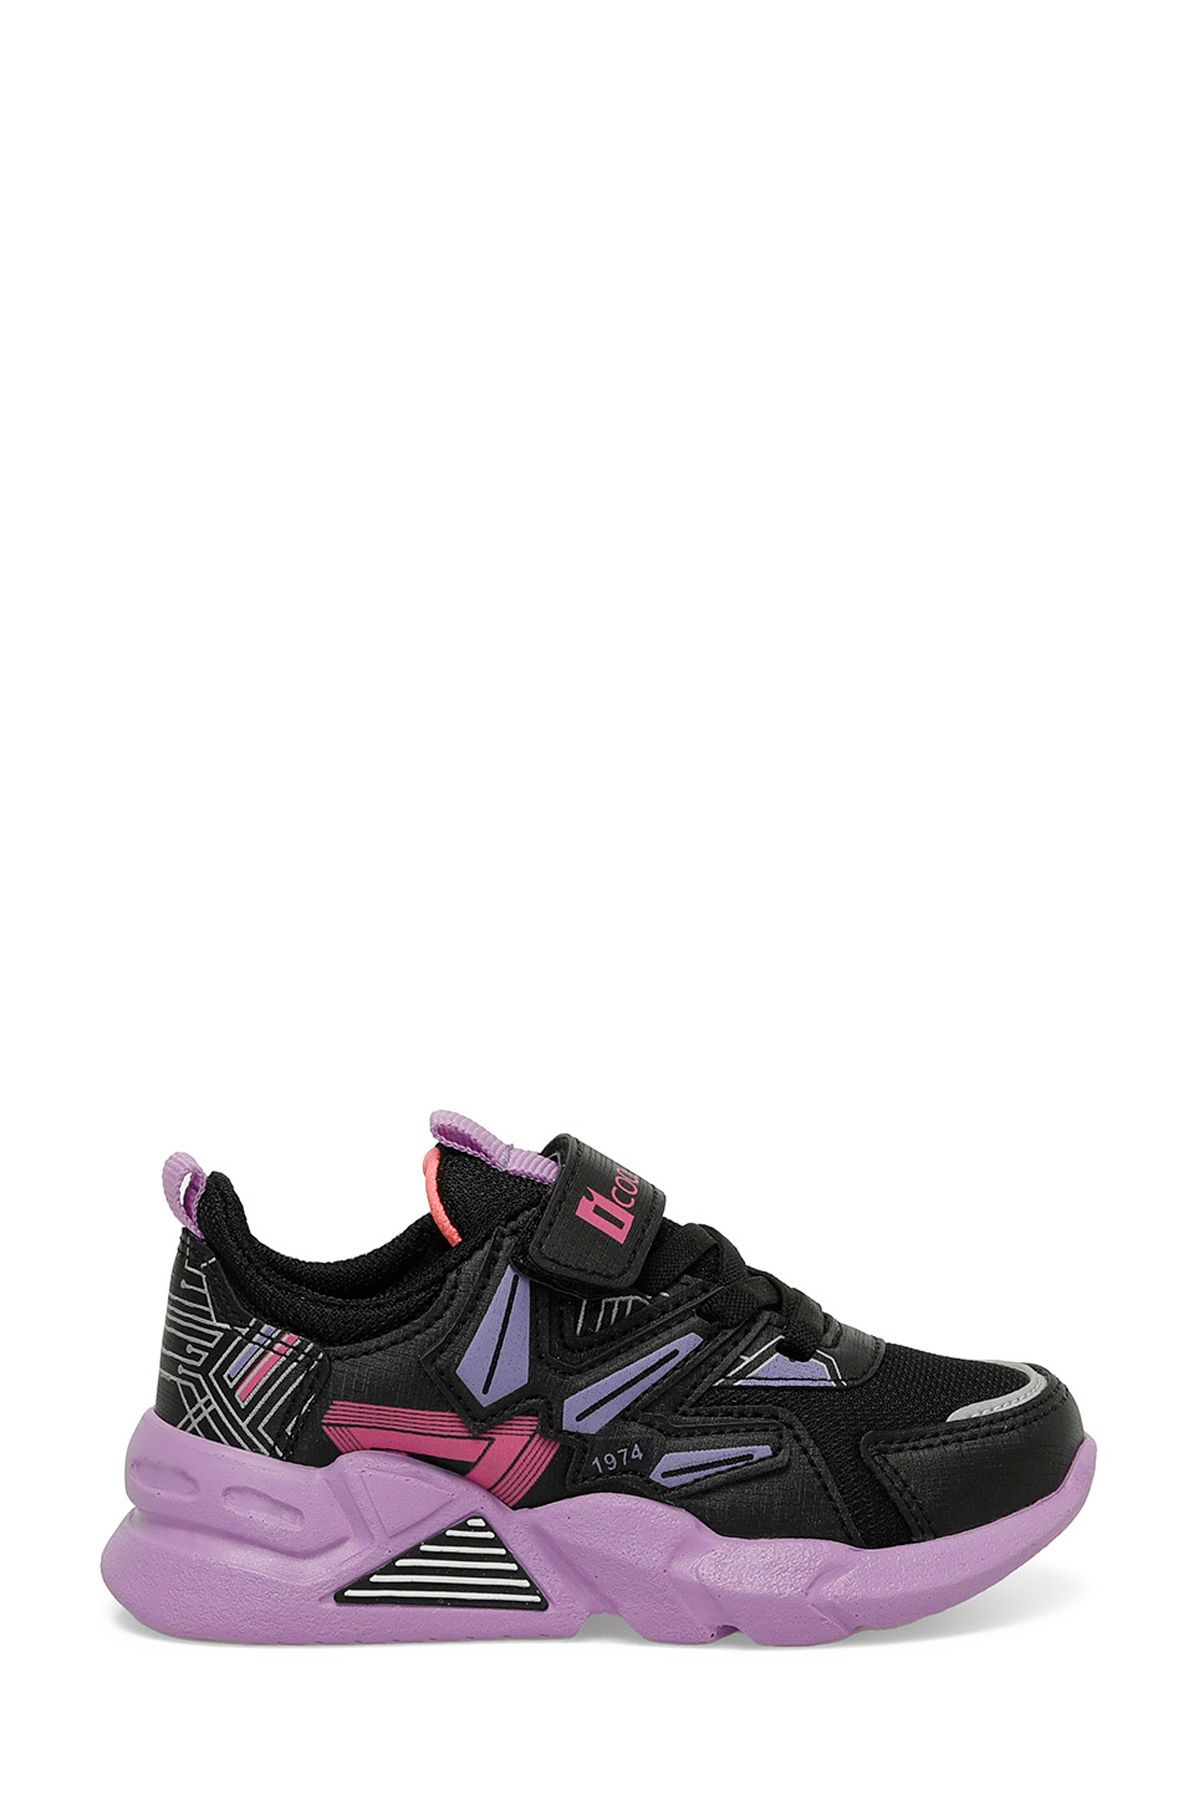 Icool DARLEN P 4FX Siyah Kız Çocuk Spor Ayakkabı